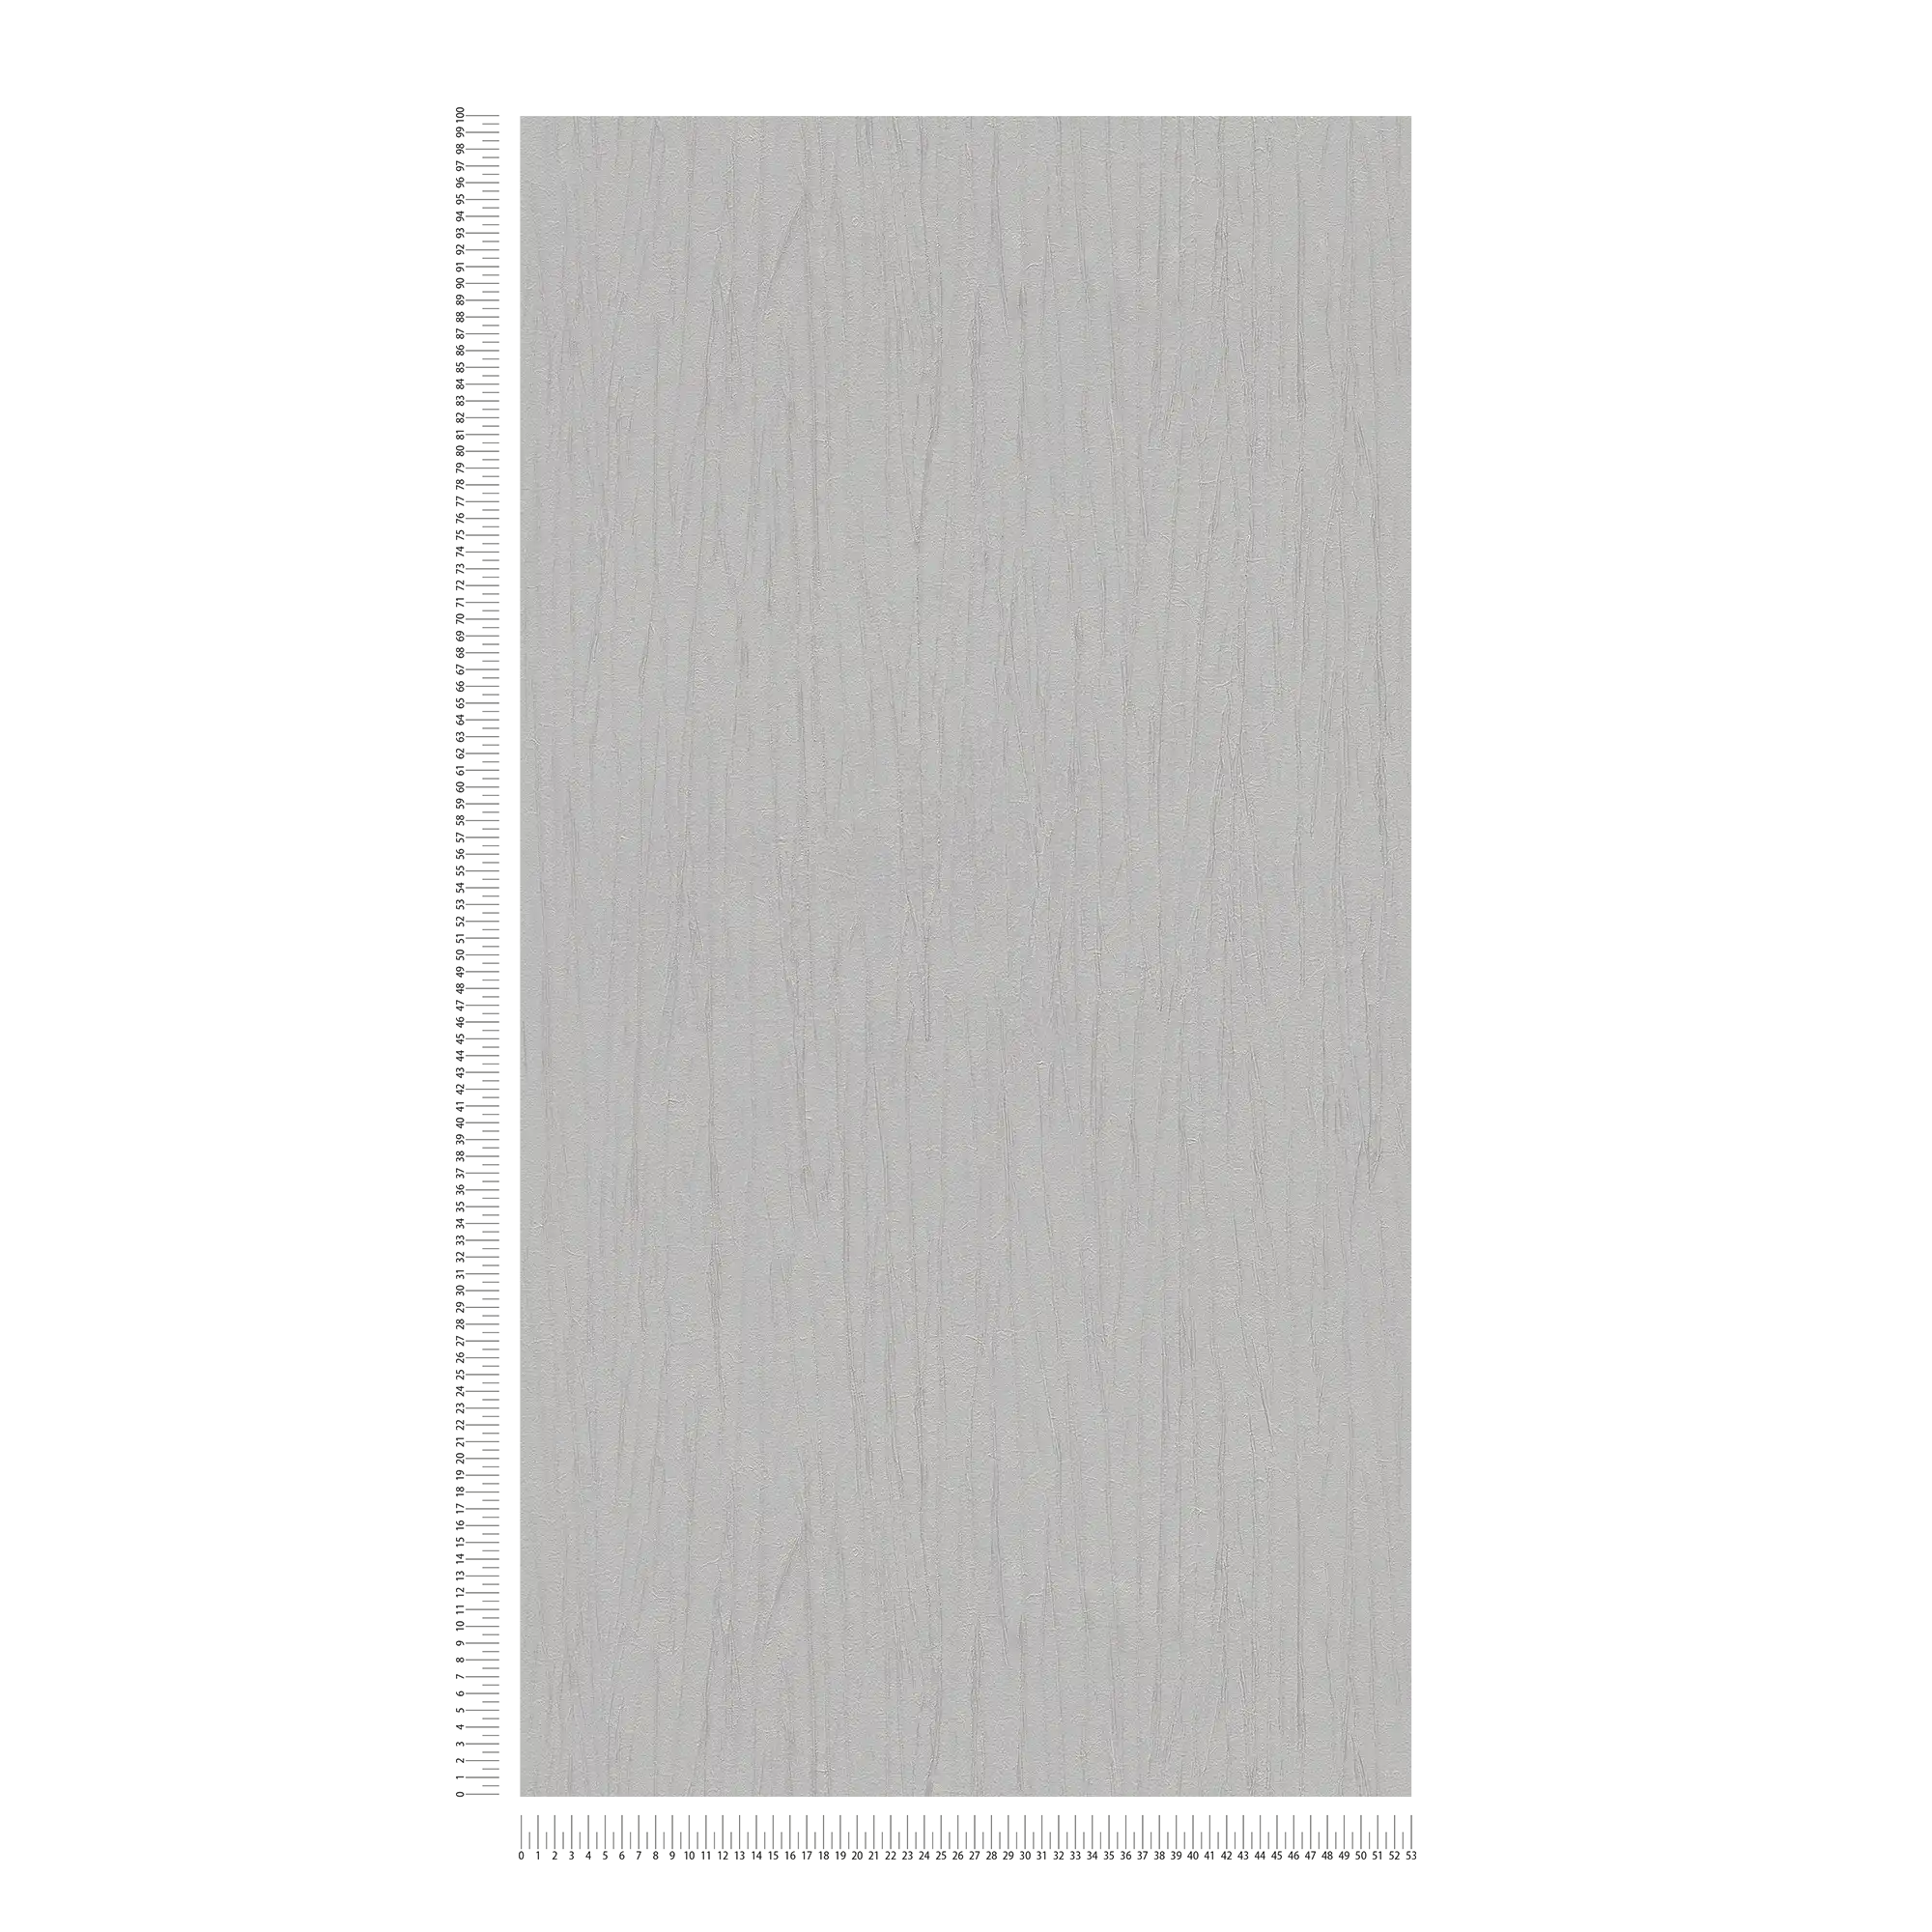             Papel pintado gris plateado con brillo metálico y grano natural
        